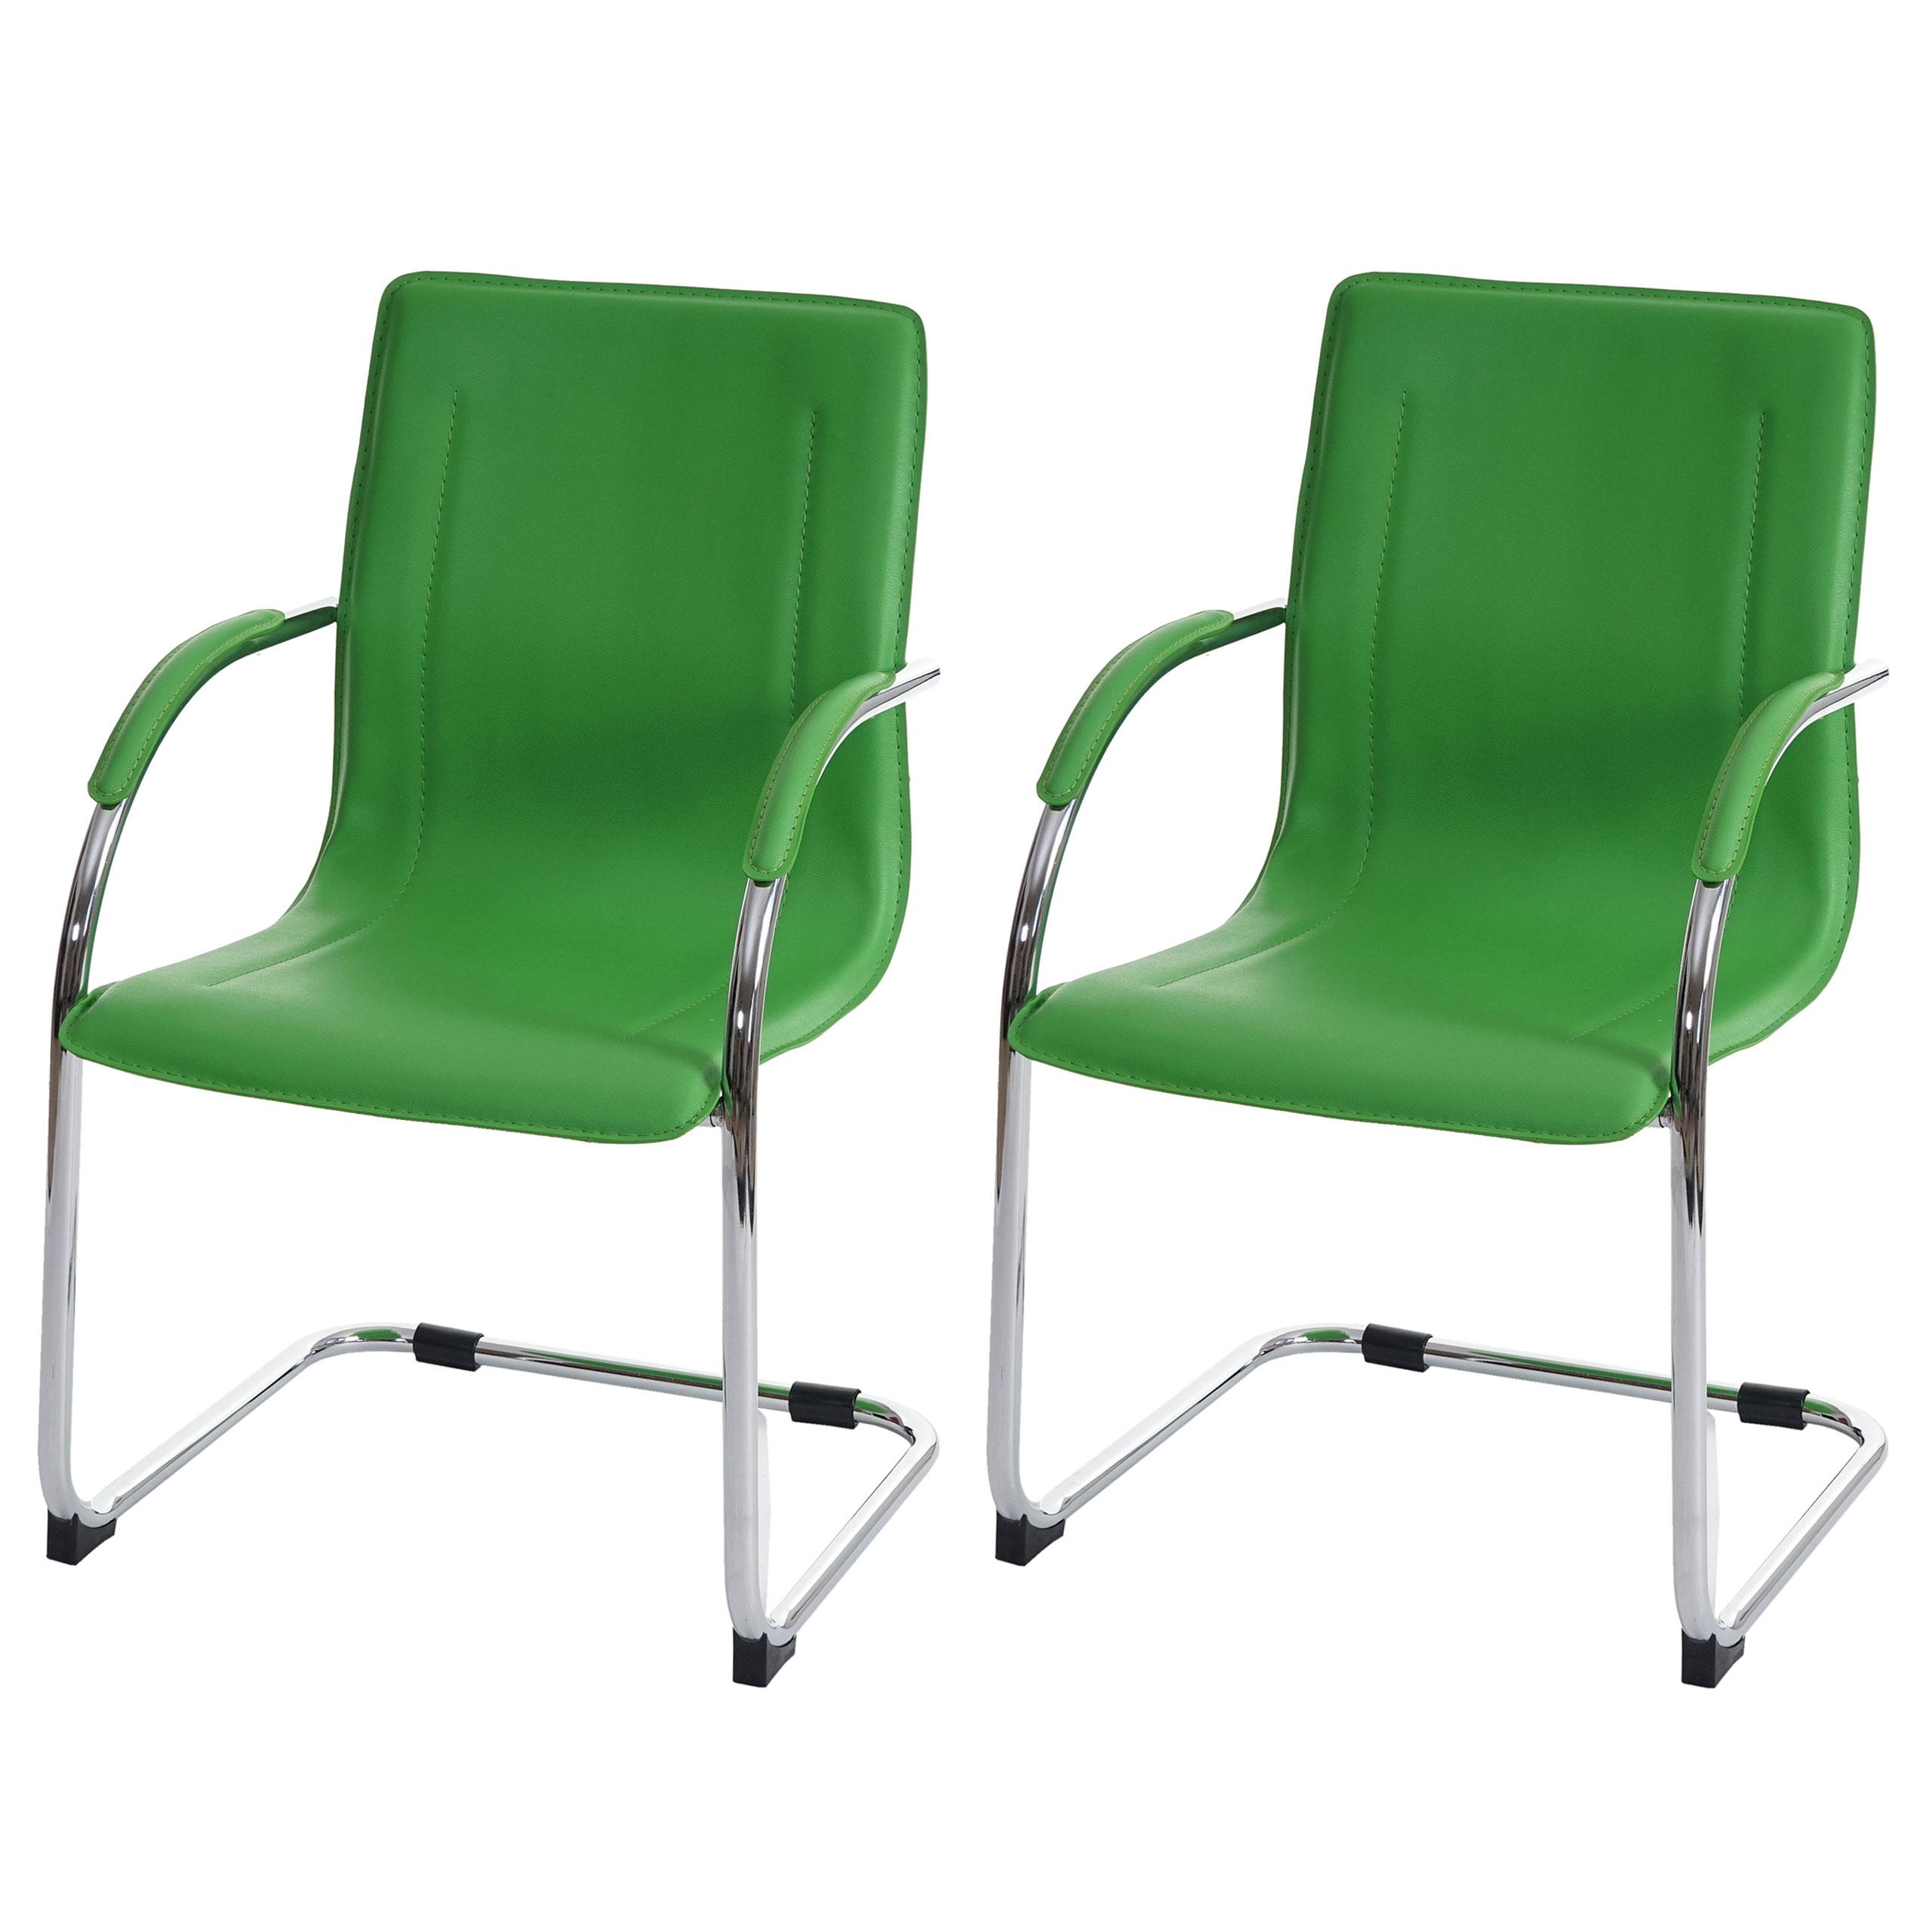 Lote de 2 Cadeiras de Visita ZEUS, Estrutura Metálica, Forrado em Pele, Cor Verde